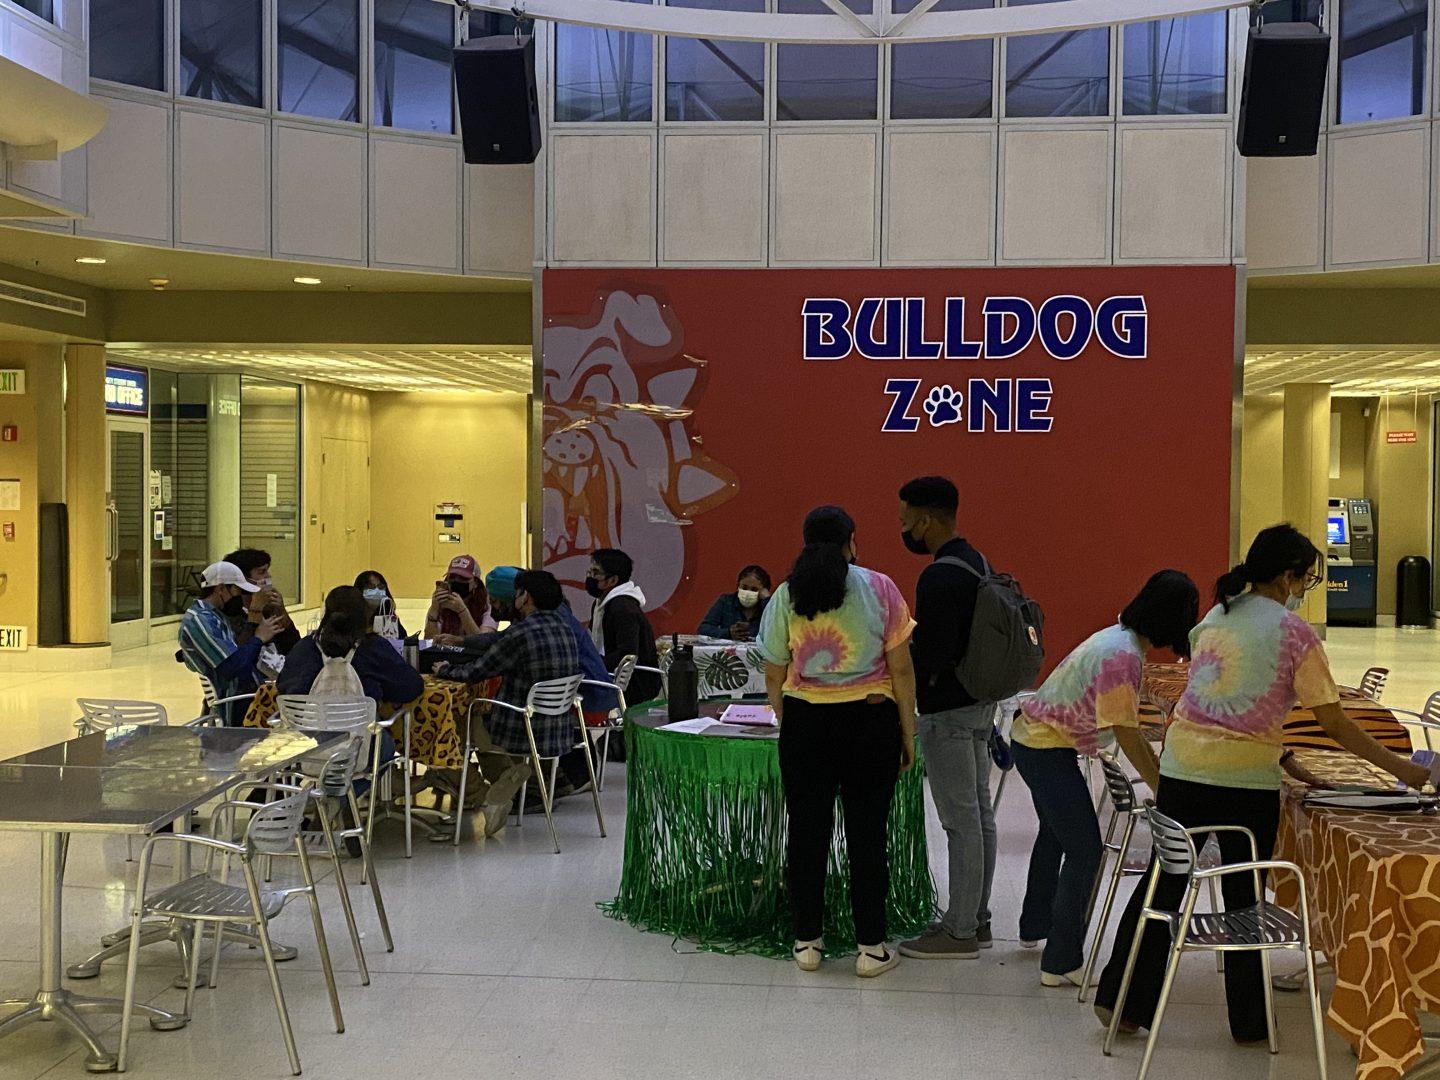 The Bulldog Zone in the University Student Union was the event venue. (Adam Ricardo Solis/The Collegian)